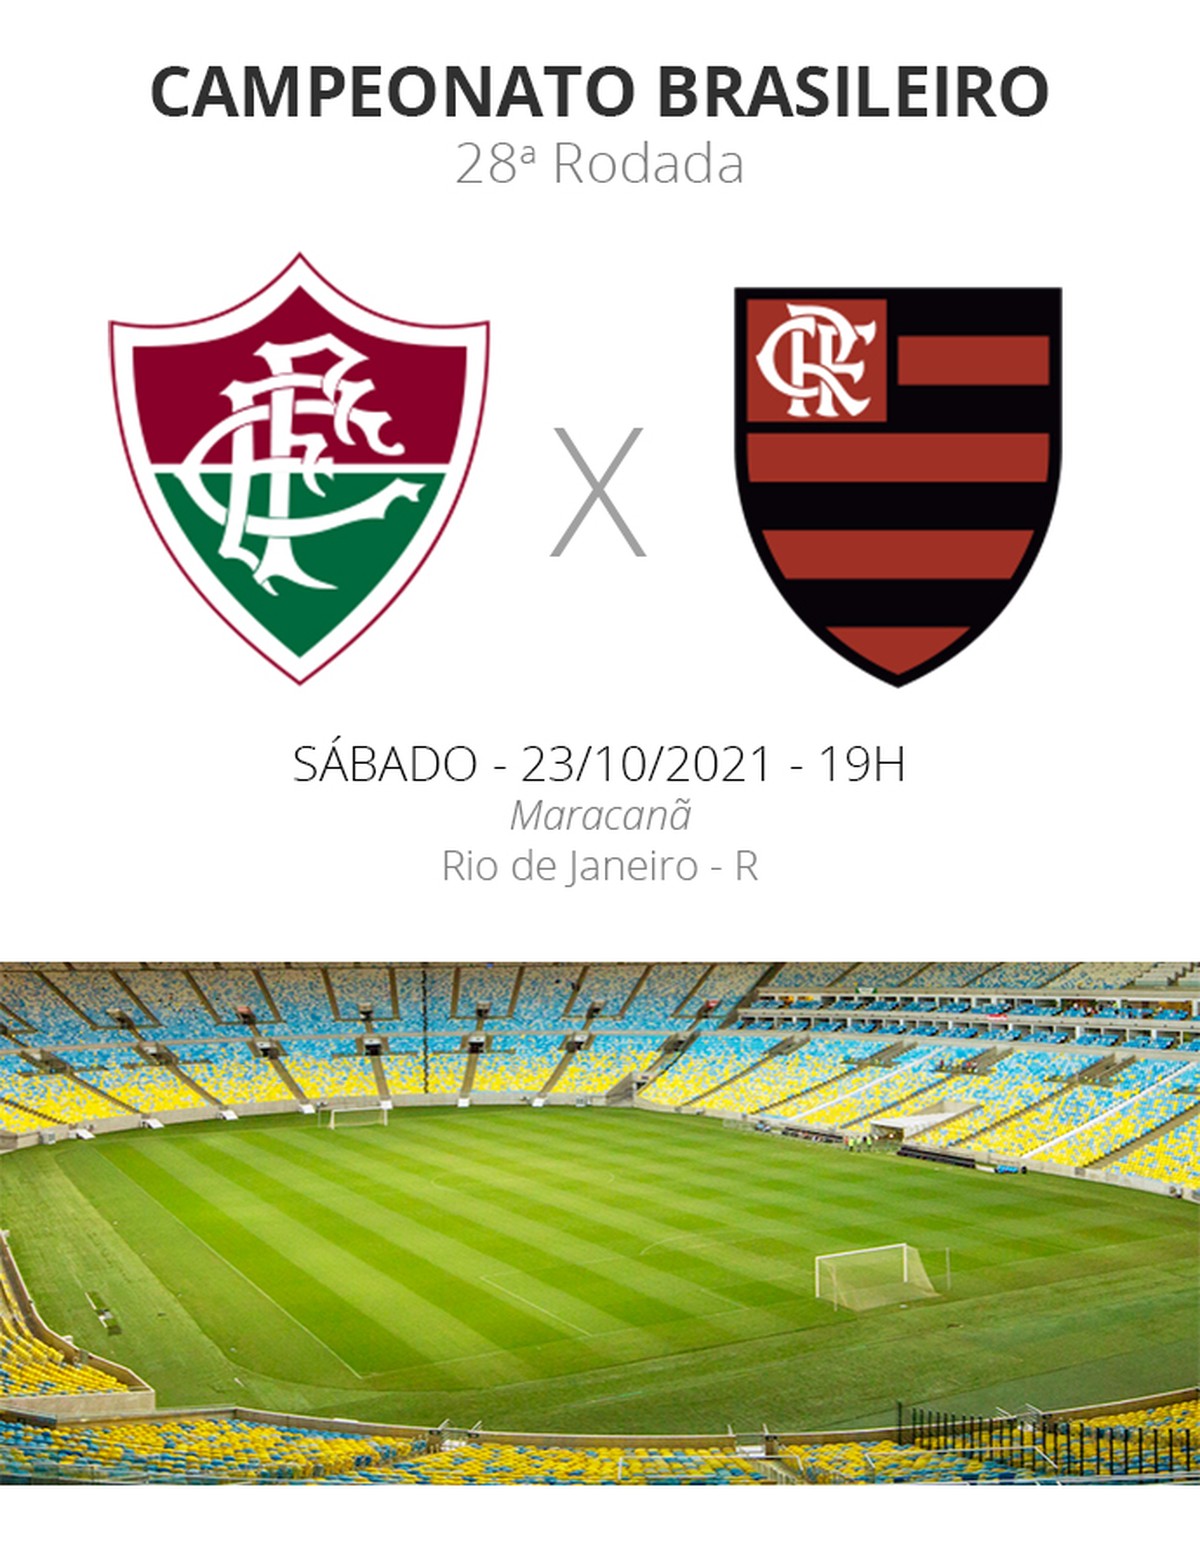 Cruzeiro x Fluminense: vidente crava o vencedor do jogo